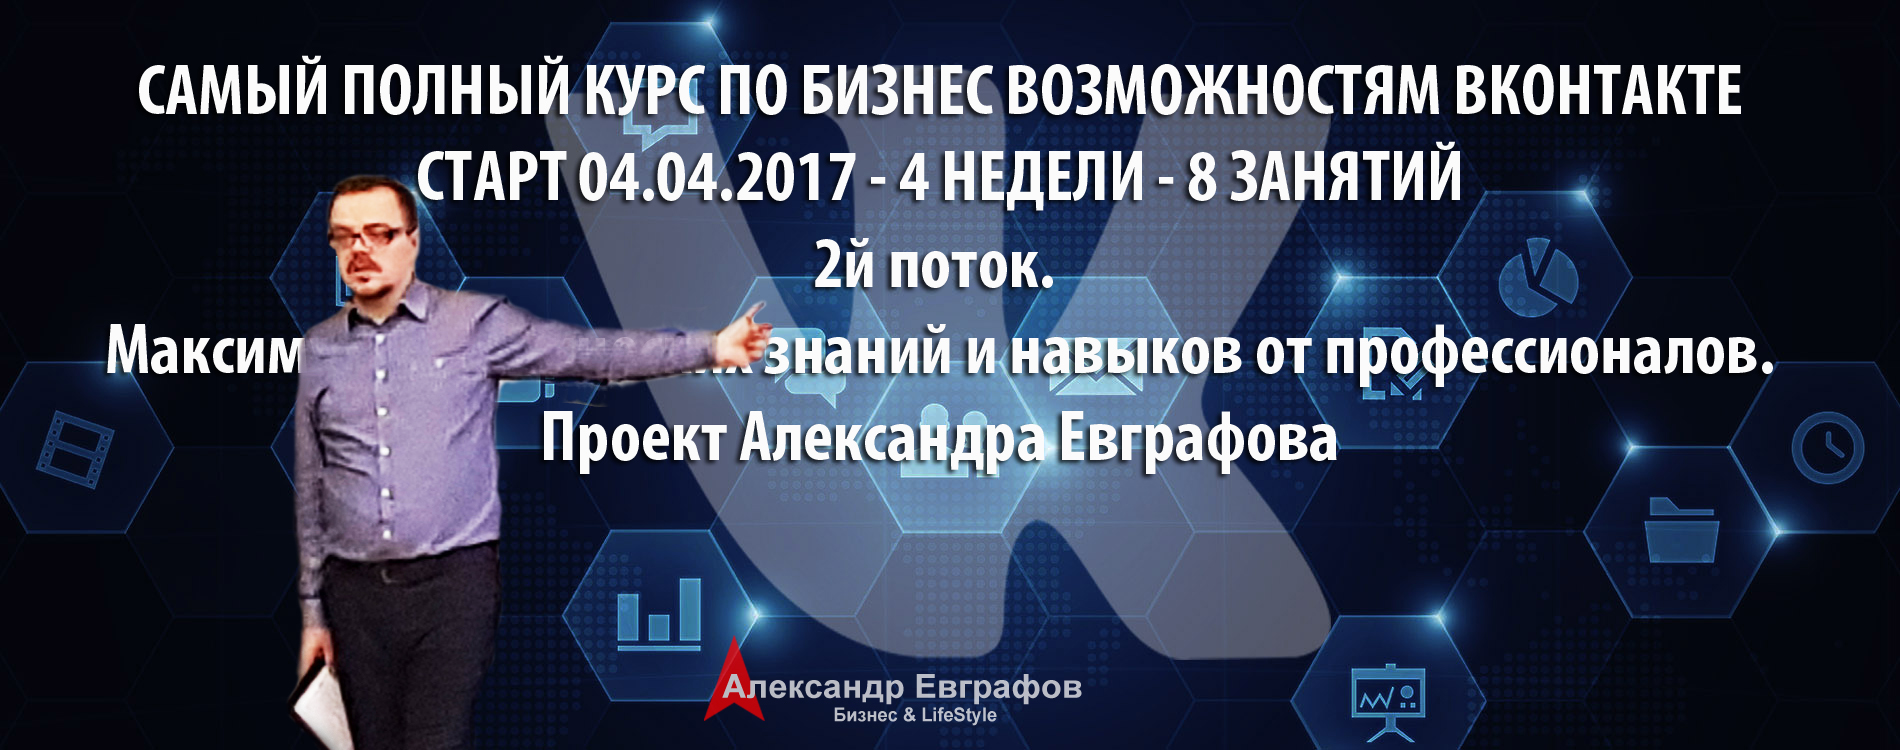 04 марта 2017 года – 05 апреля 2017 года. Самый полный базовый курс по бизнес возможностям ВКонтакте